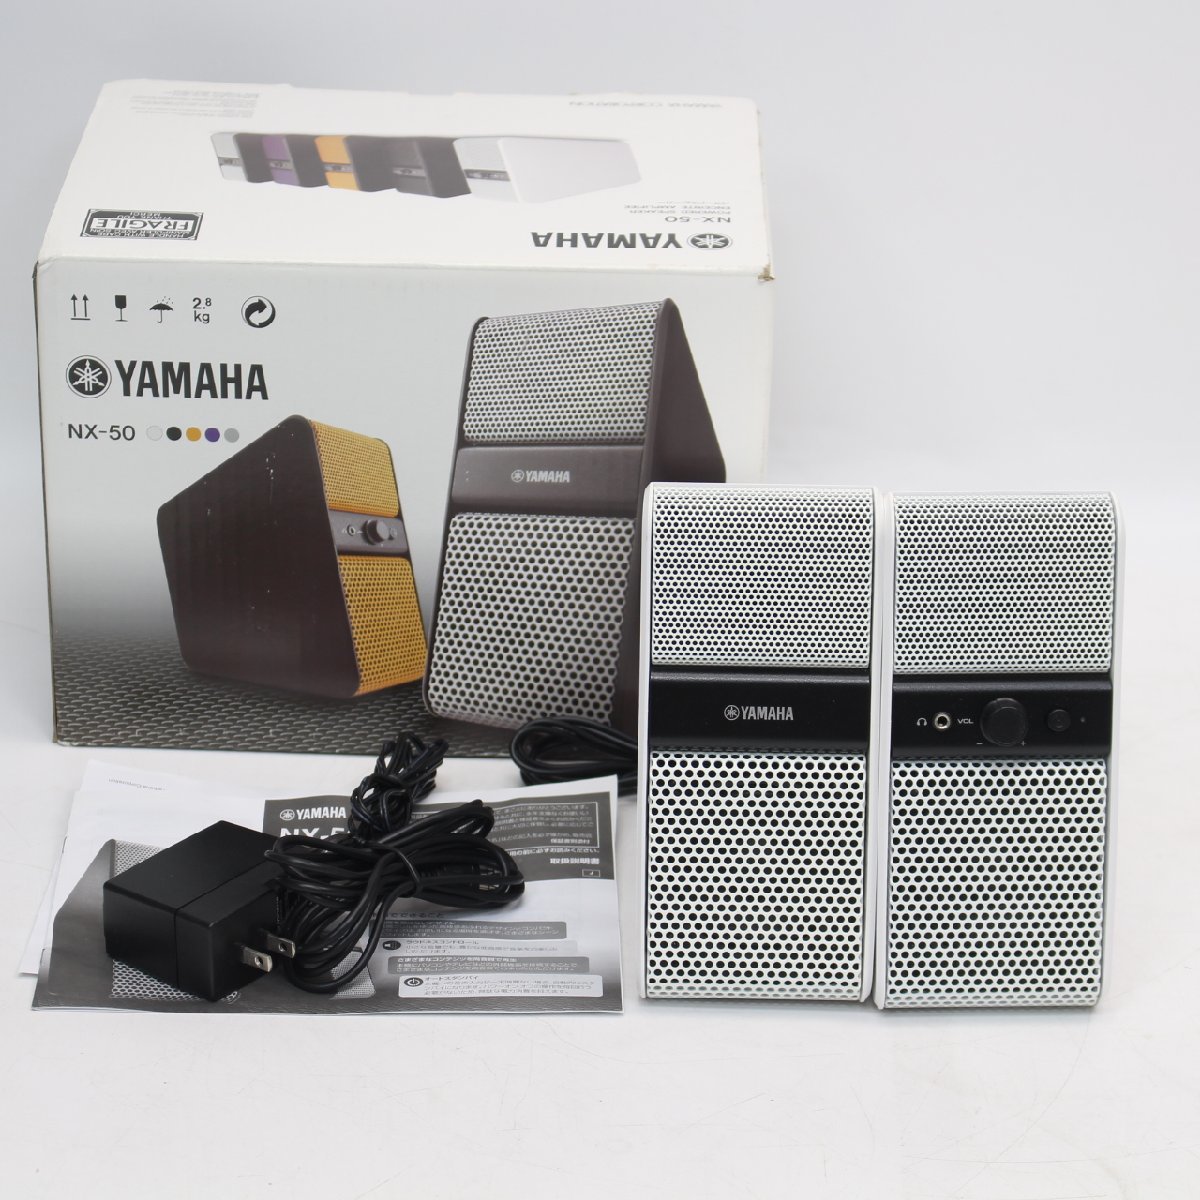 036)【美品】YAMAHA NX-50 ホワイト パワードスピーカー